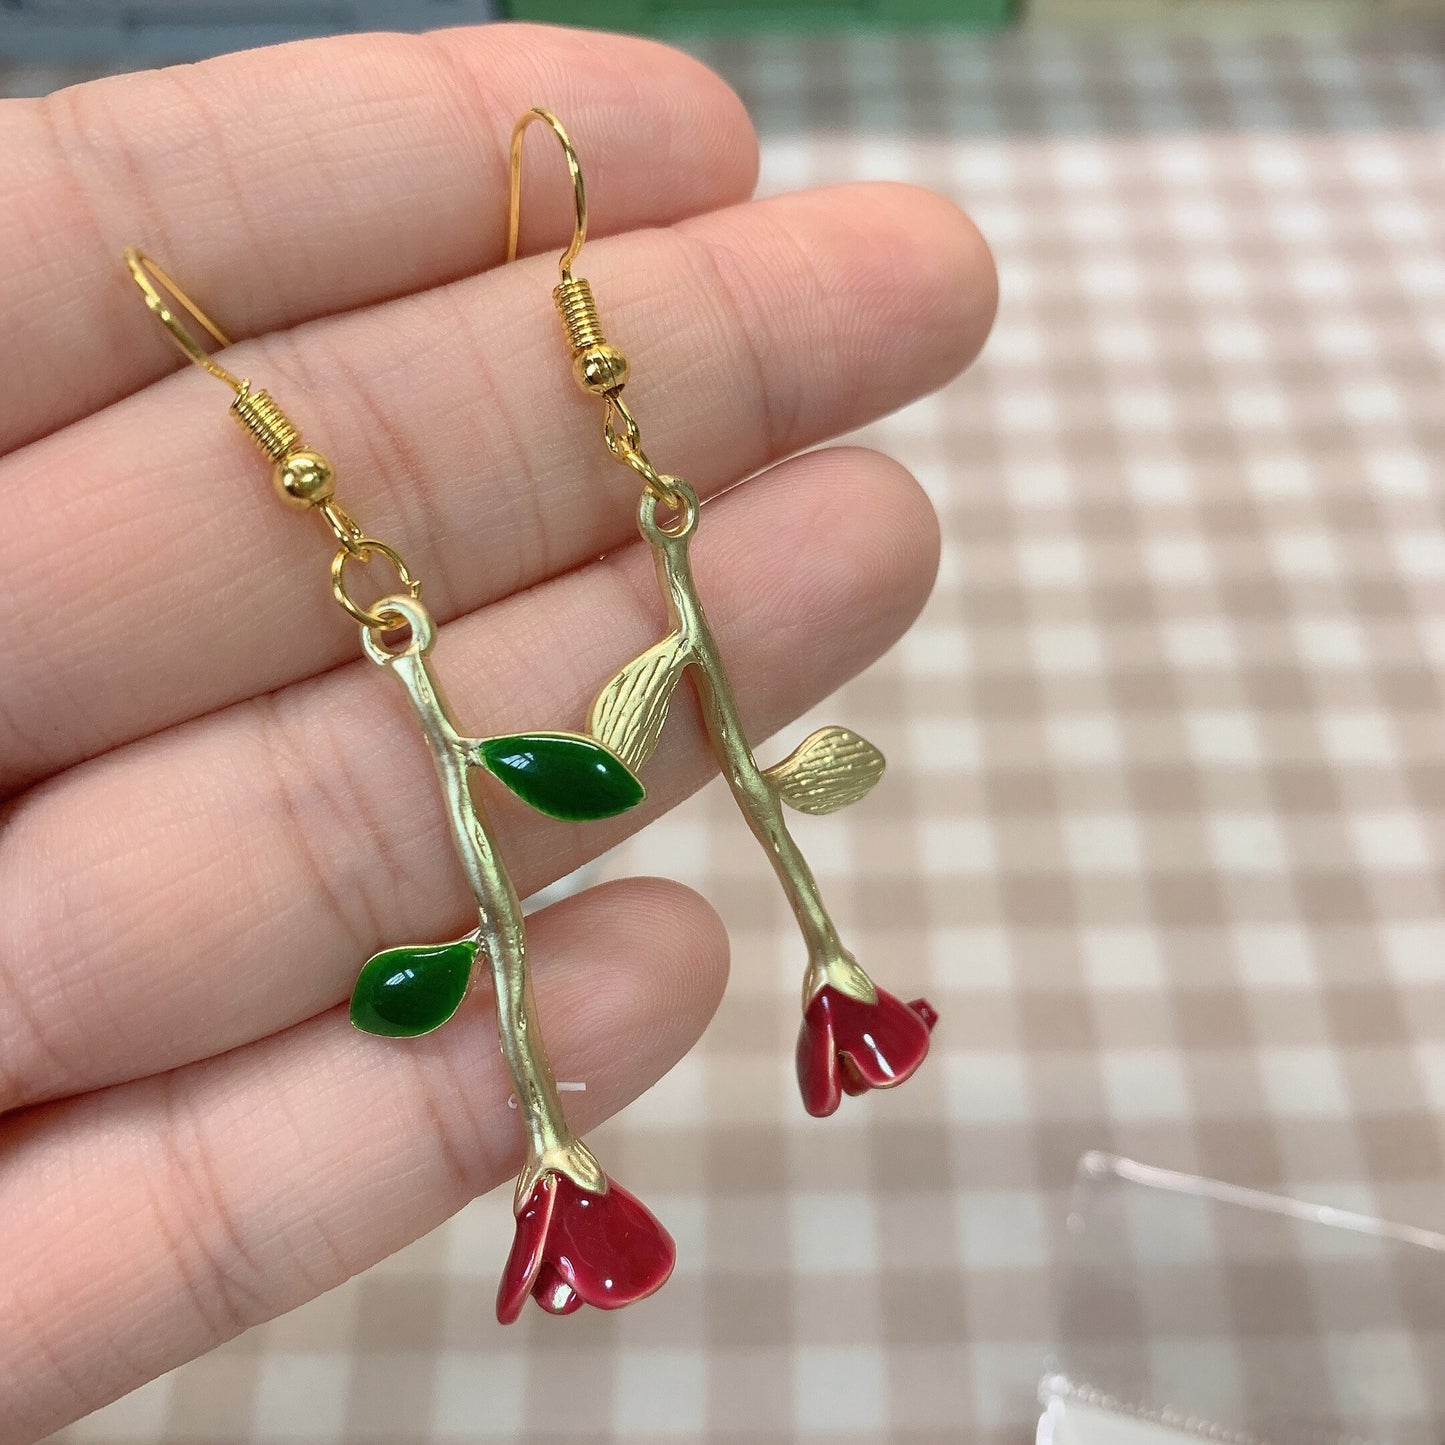 Moya handmade earrings「redness of the skin rose」